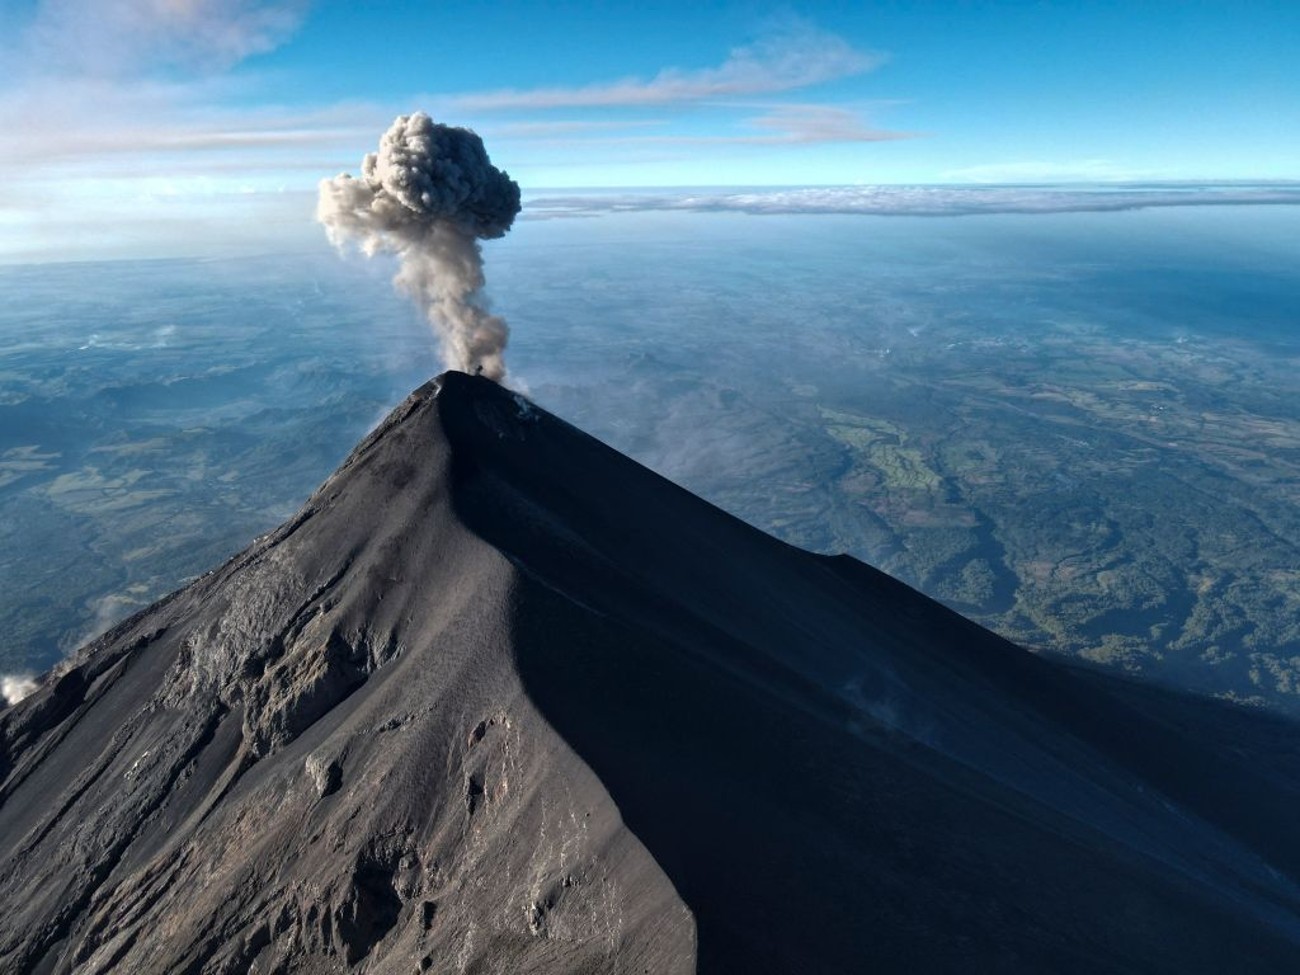 El volcán de Fuego tiene explosiones moderadas y fuertes